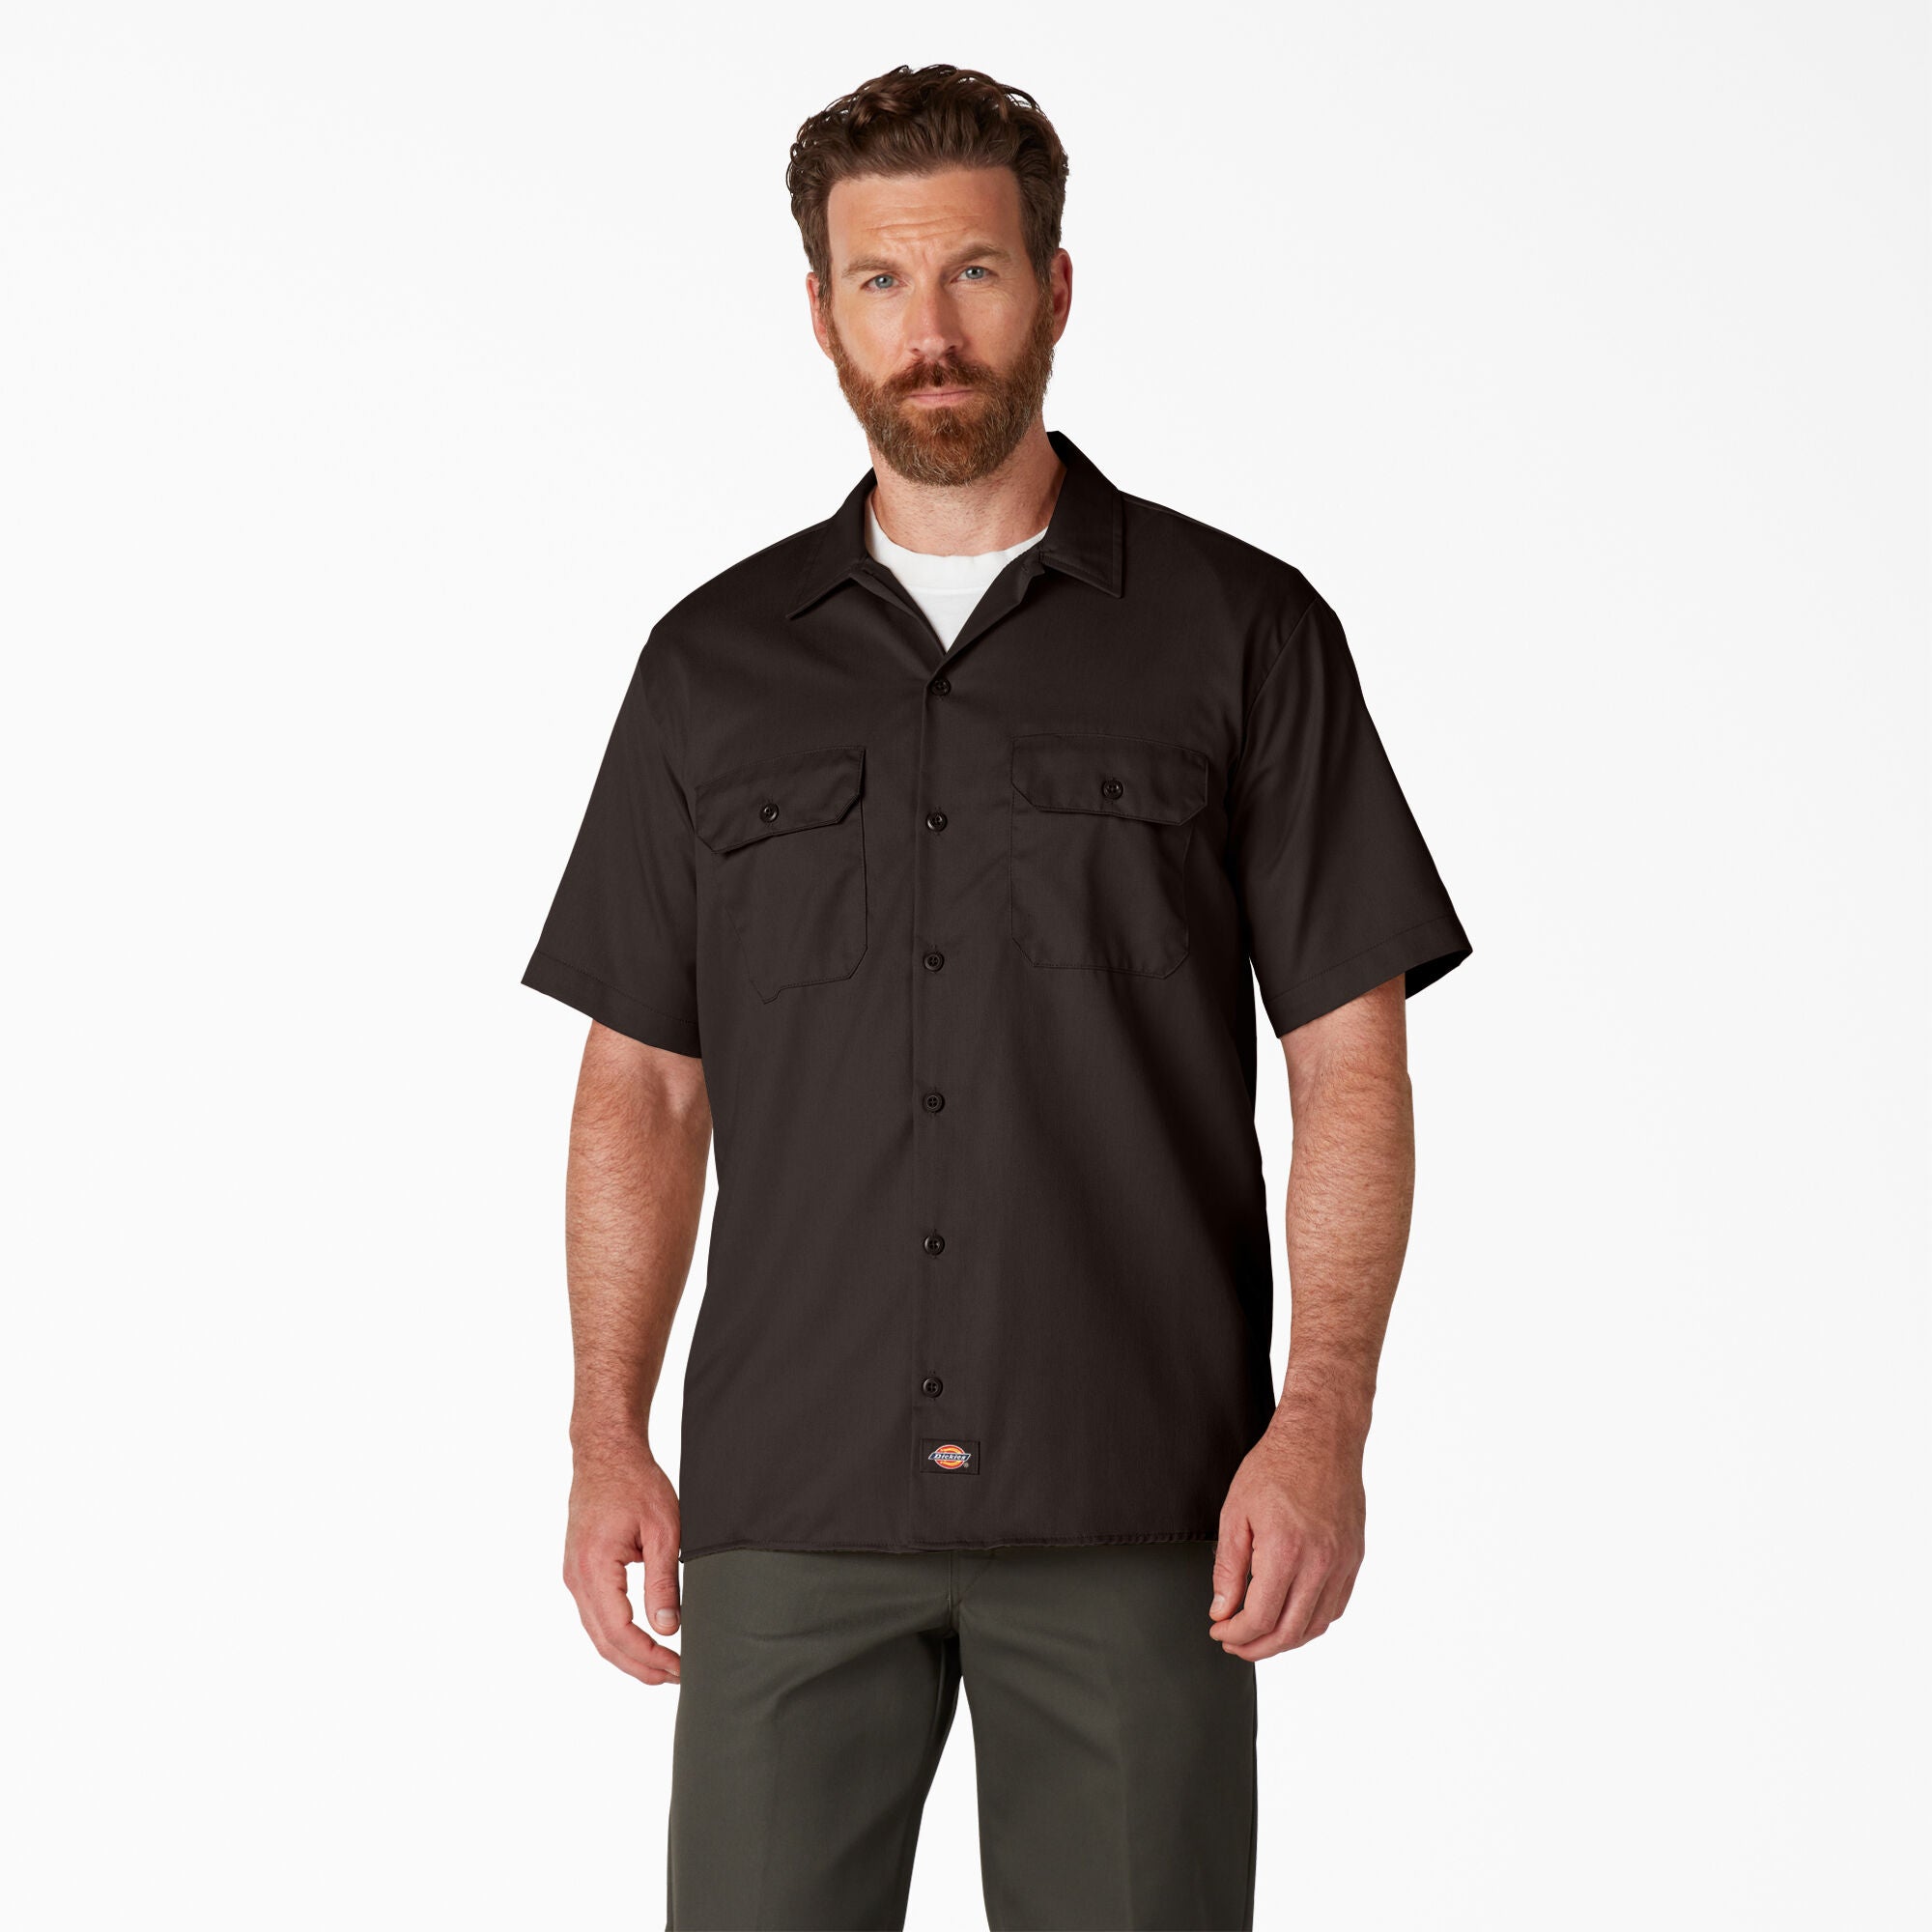 Dickies Short Sleeve Work Shirt, Dark Brown